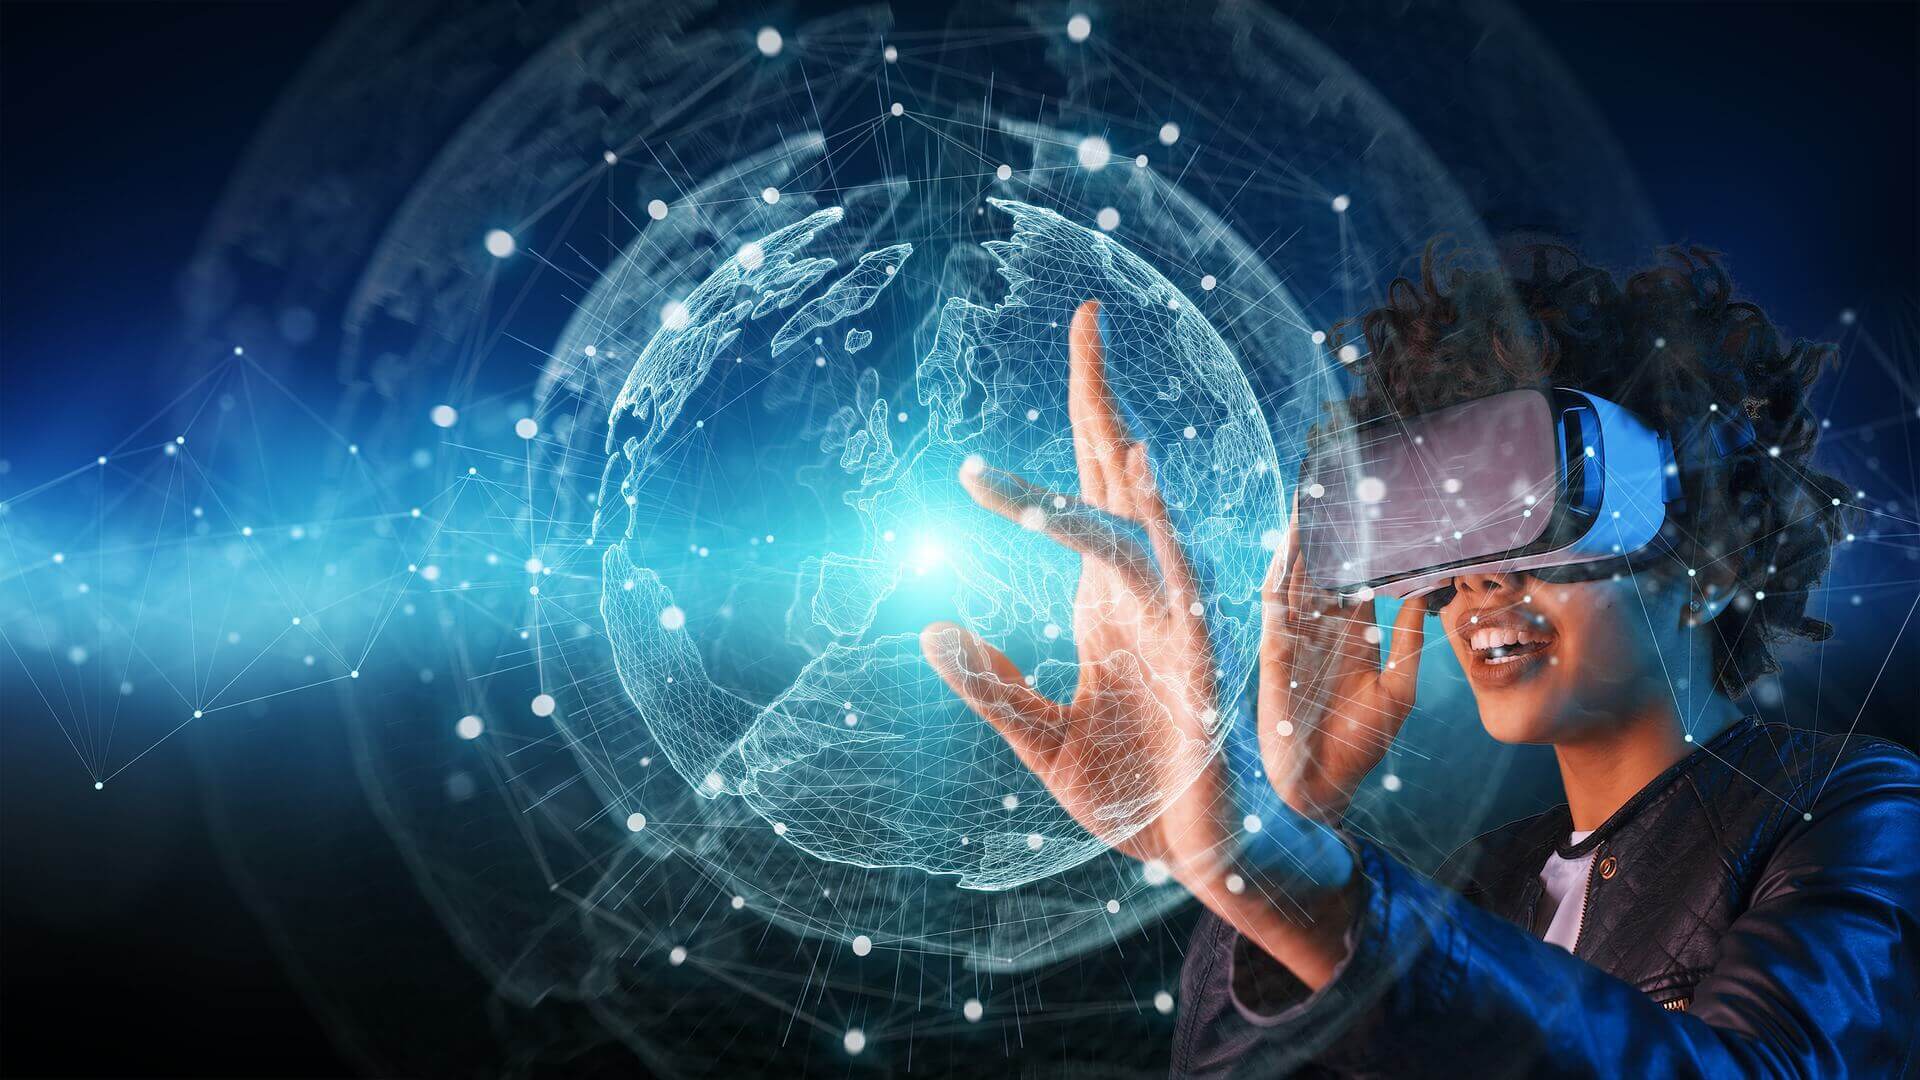 Une étudiante révise ses cours de géographie à travers son casque de réalité virtuelle.